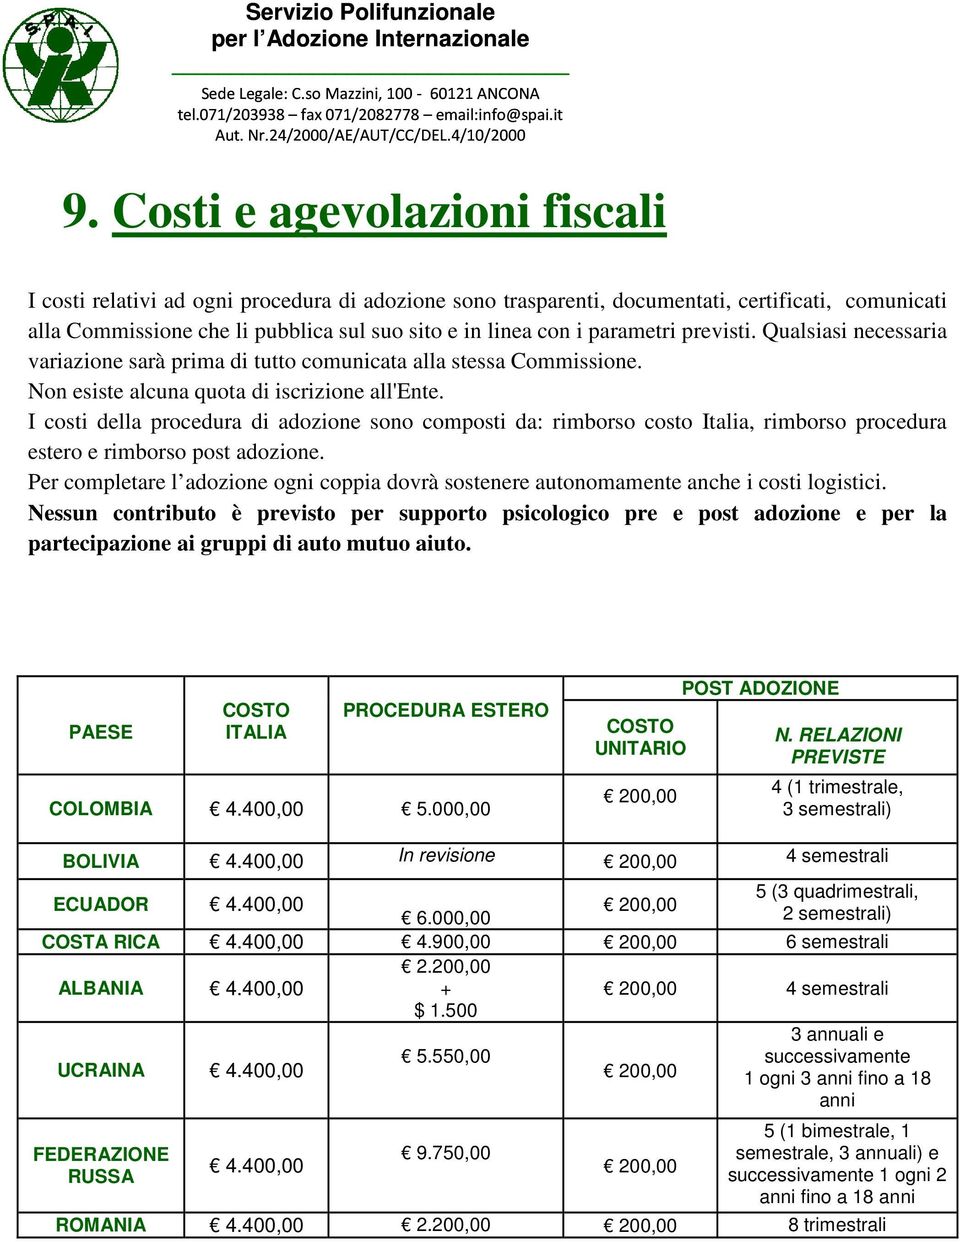 I costi della procedura di adozione sono composti da: rimborso costo Italia, rimborso procedura estero e rimborso post adozione.